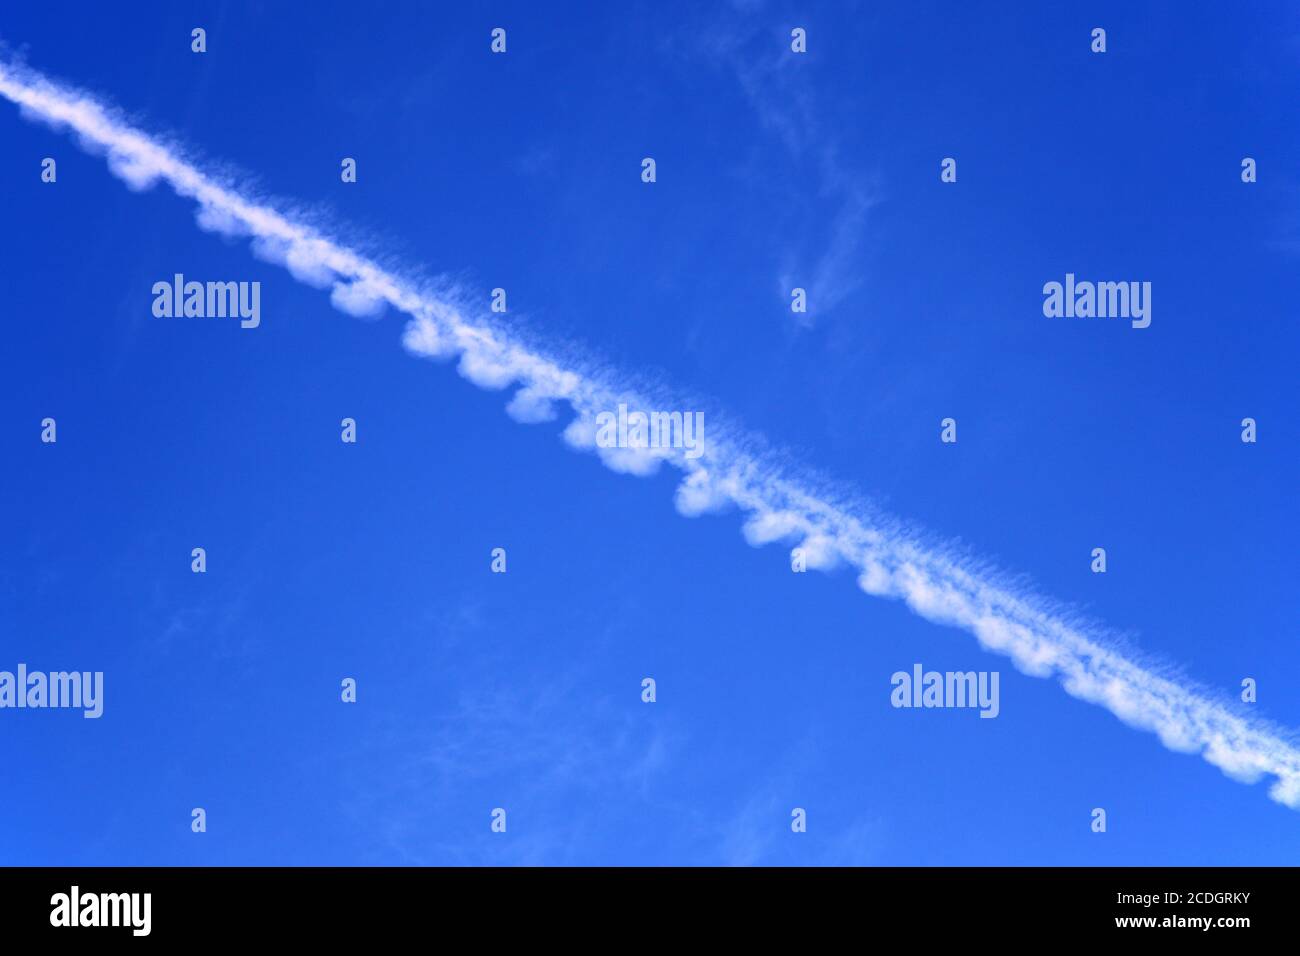 Piste d'avion blanc, piste de condensation ou piste de vapeur contre ciel bleu Banque D'Images